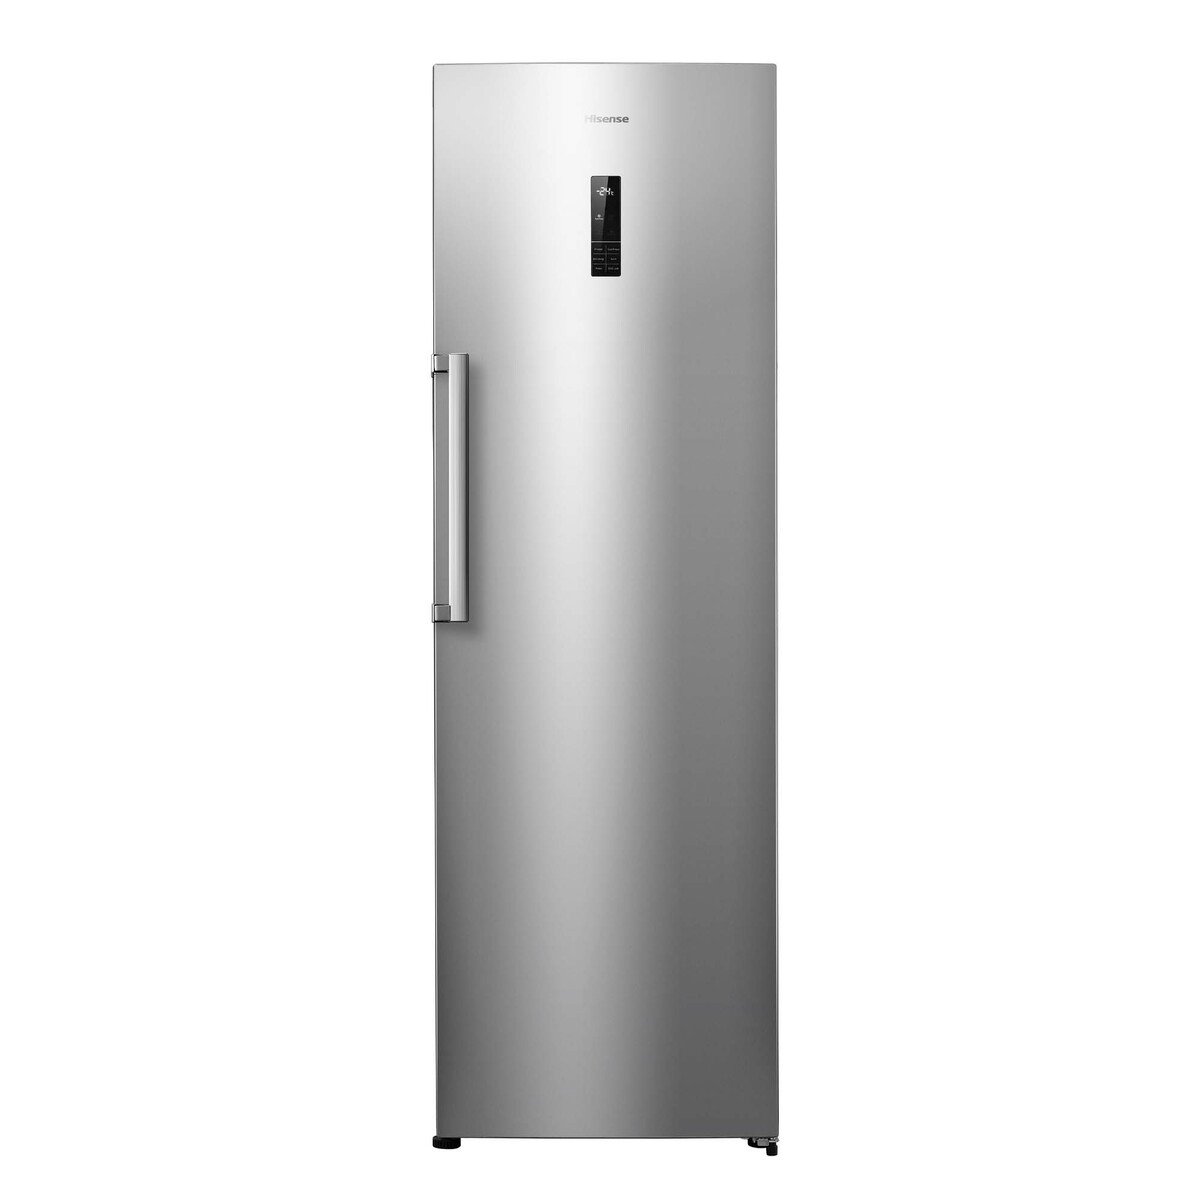 Hisense Upright Freezer FV341N4BC1 341Ltr